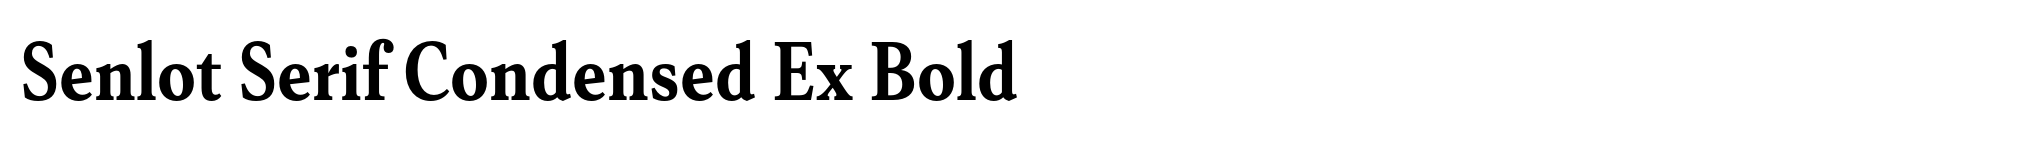 Senlot Serif Condensed Ex Bold image